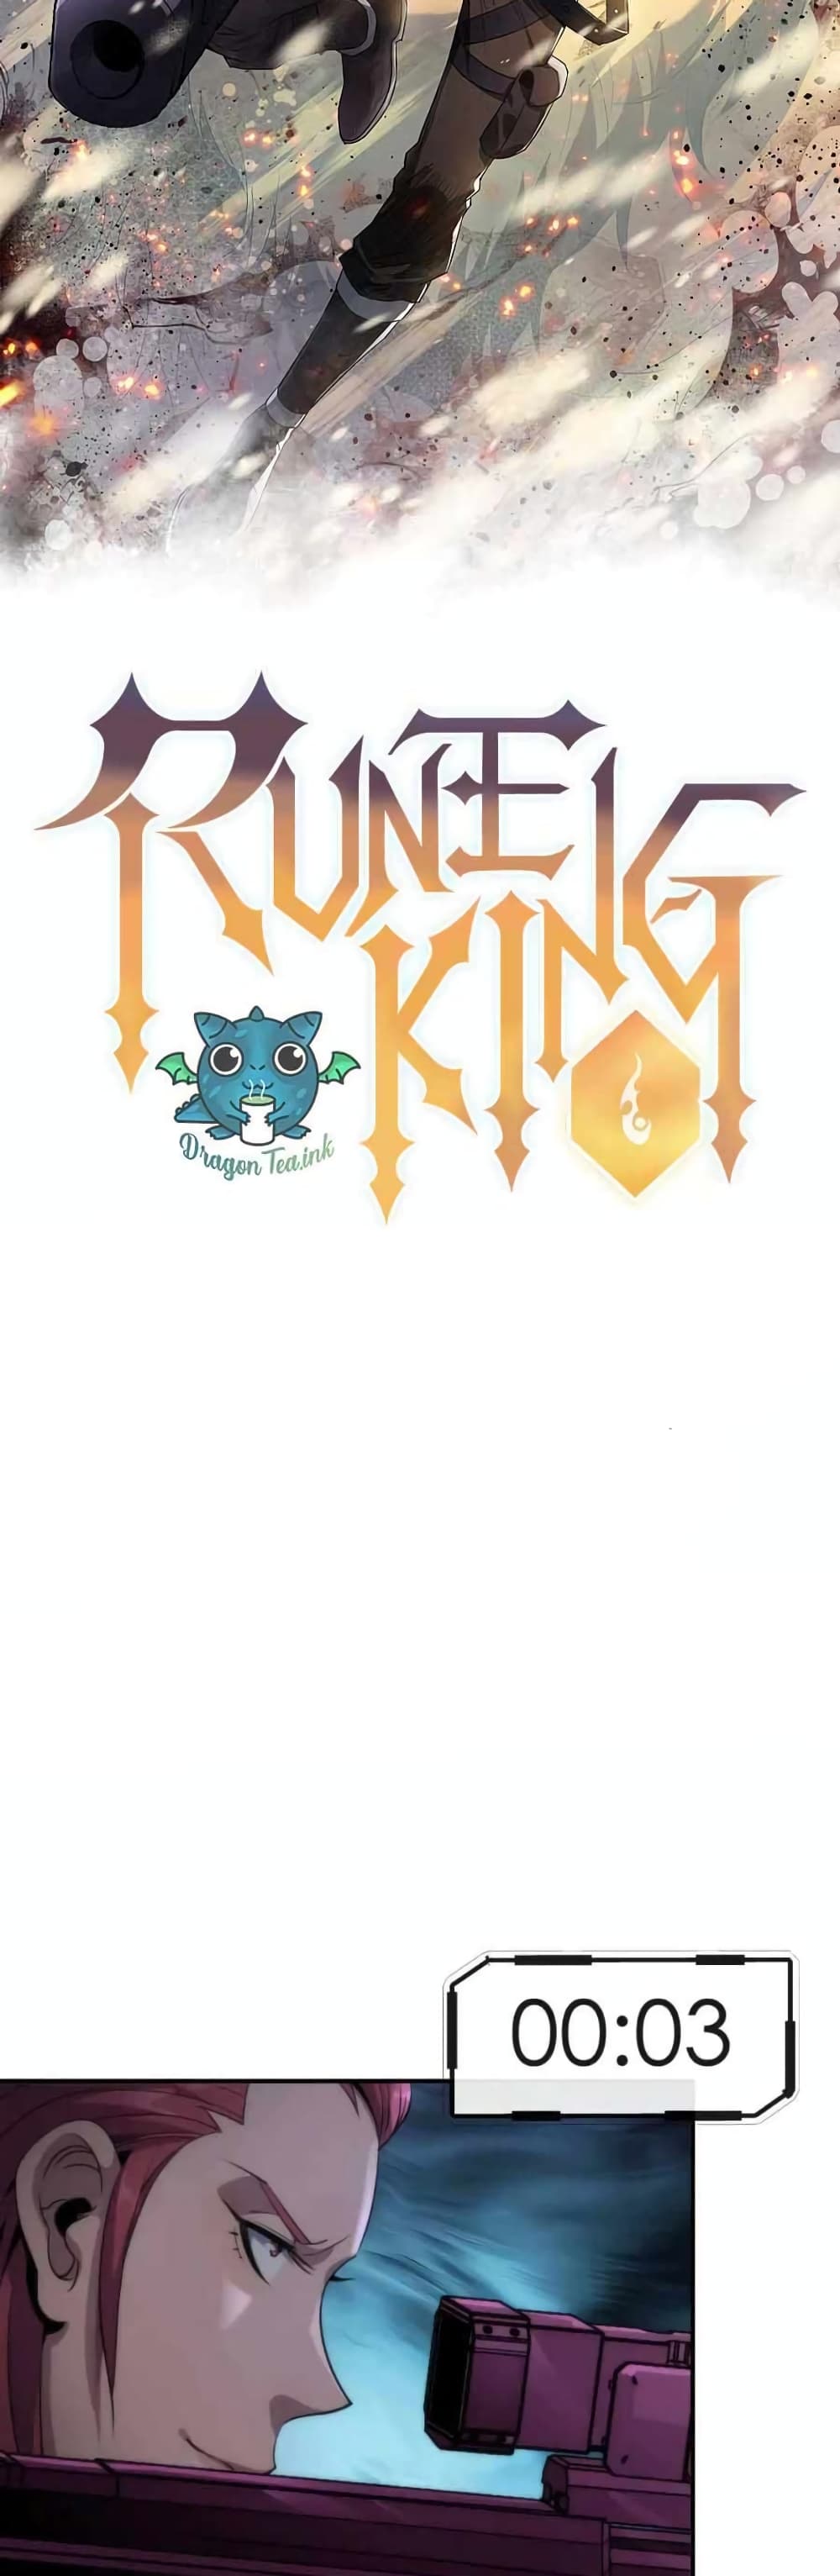 Rune King 16 (12)